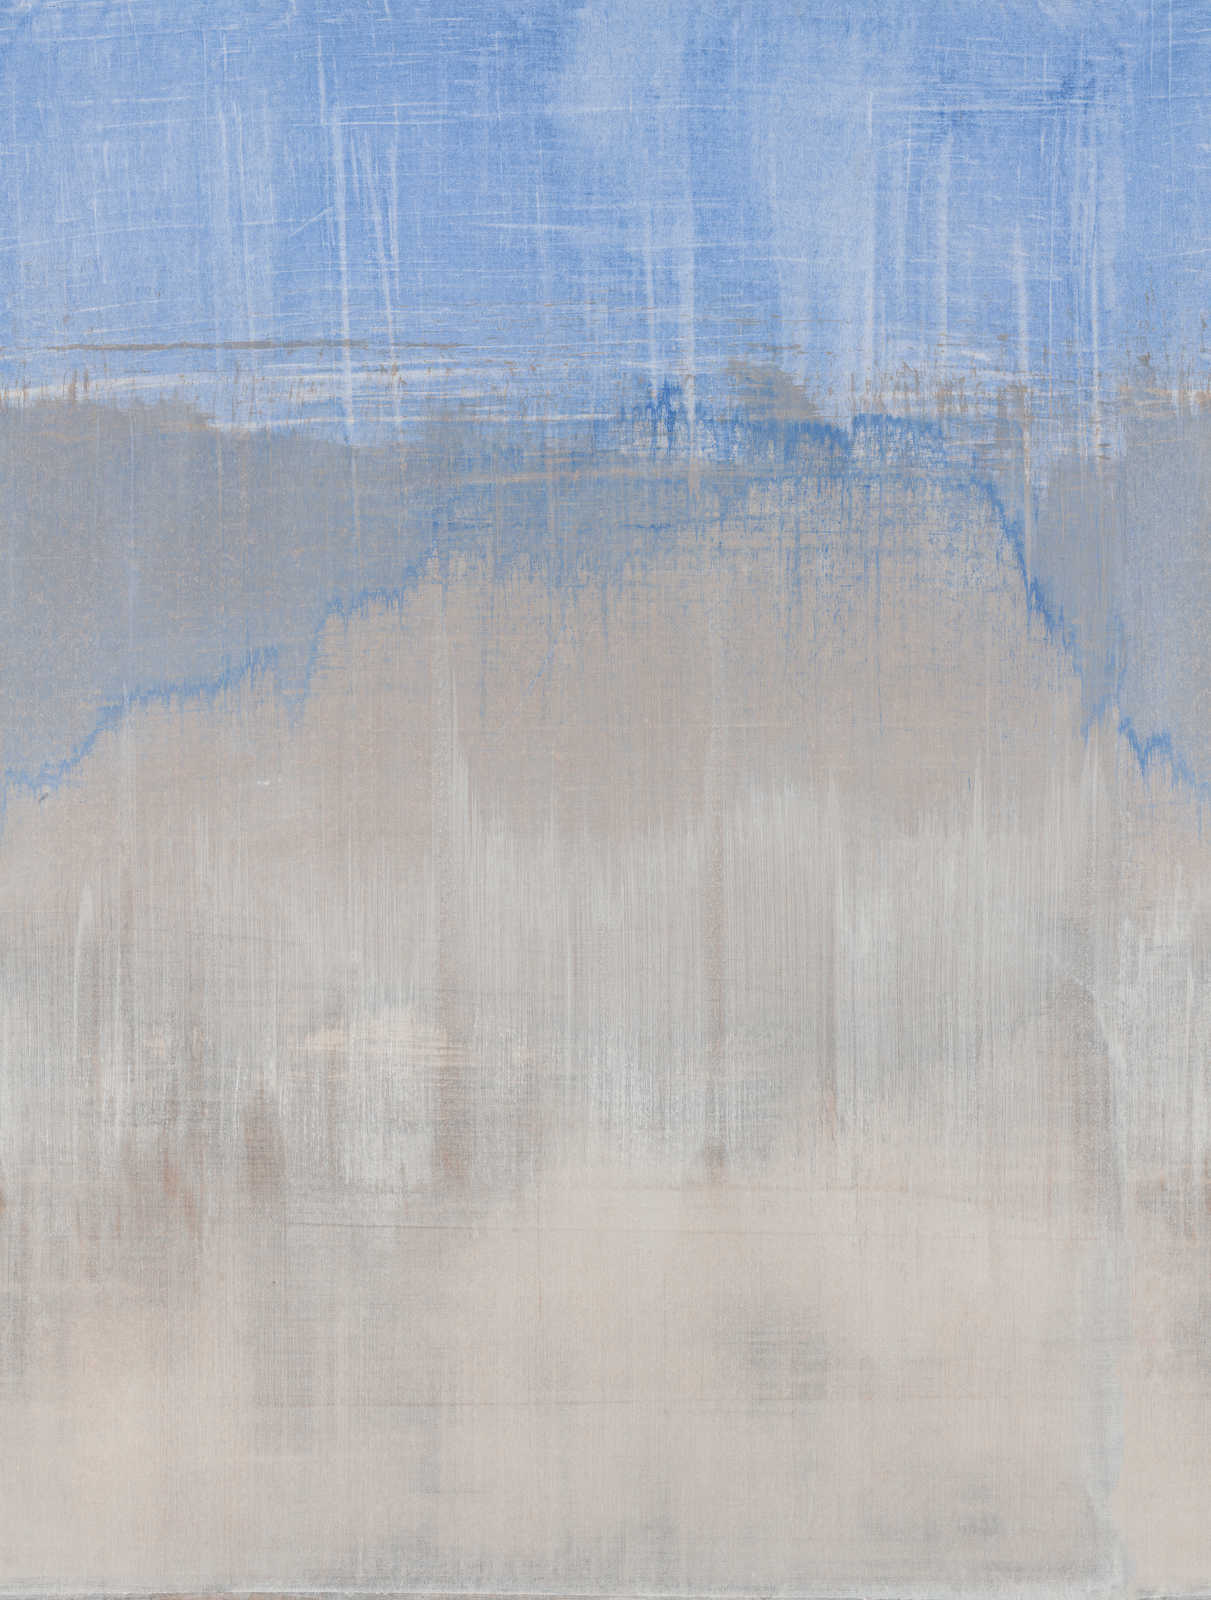             Vliesbehang in aquarellook gebruikt - blauw, grijs
        